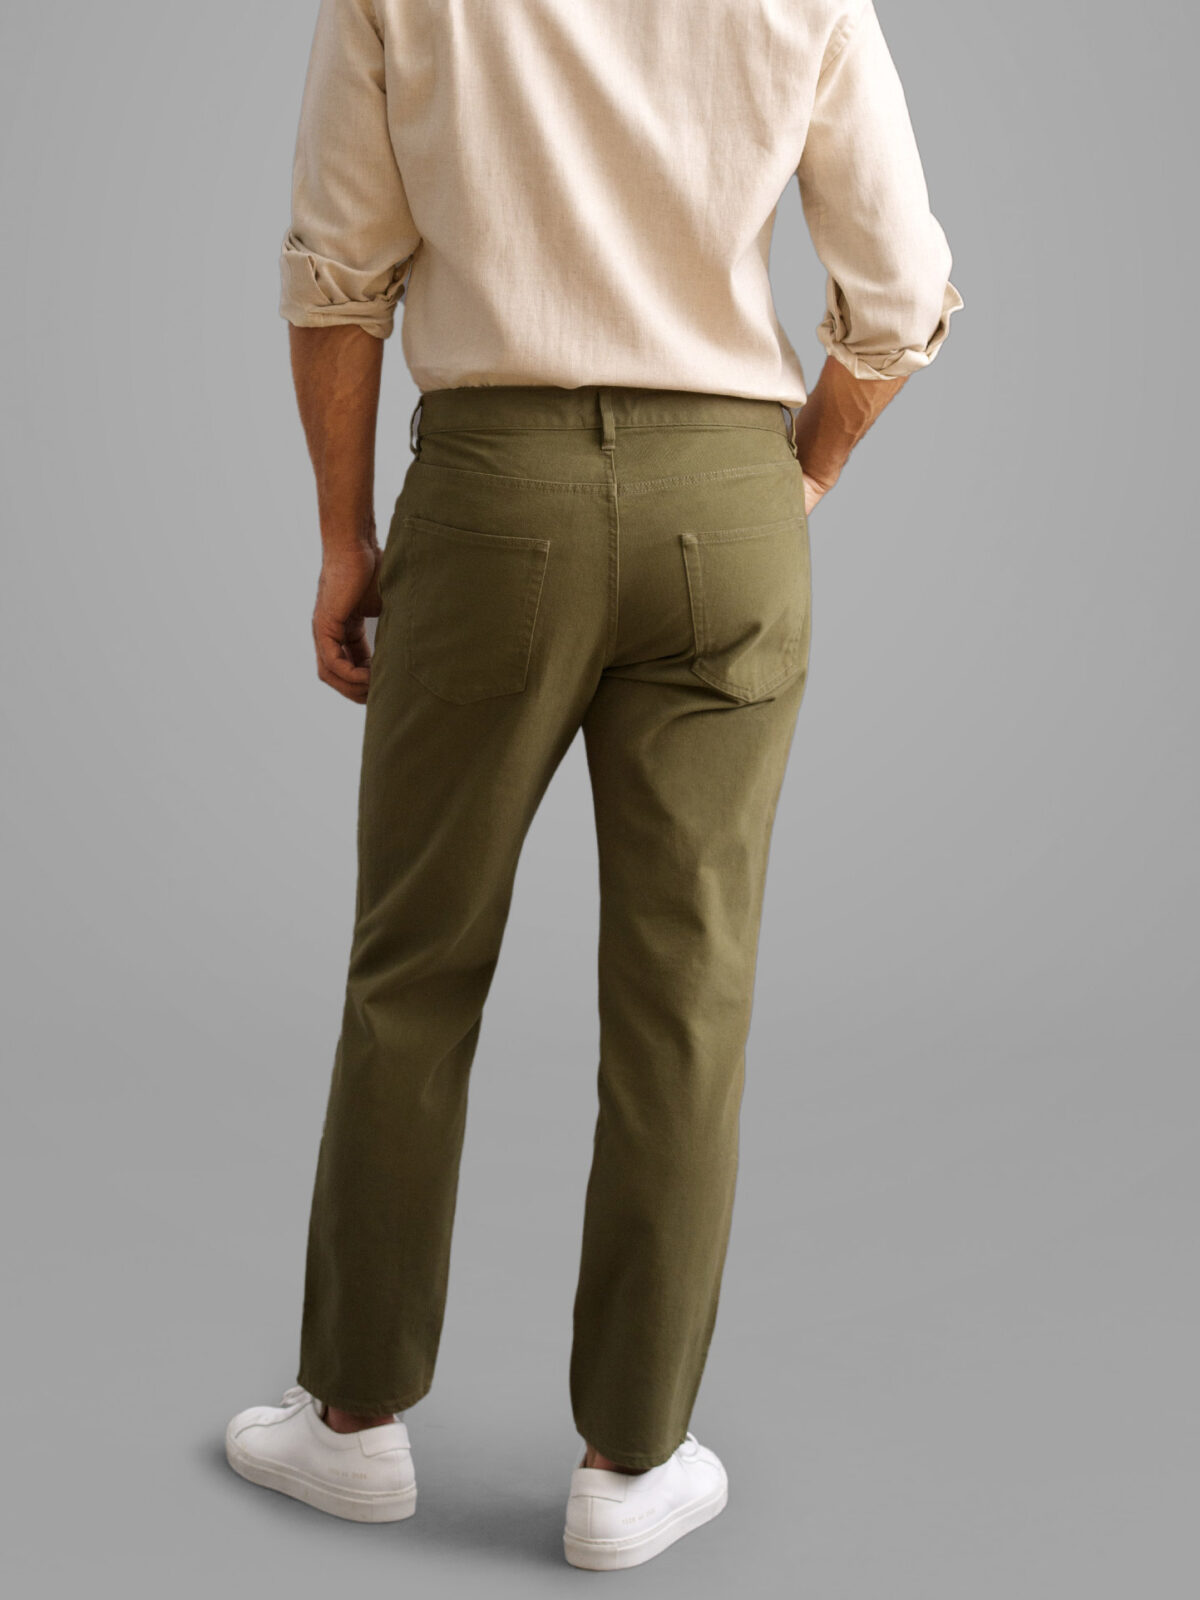 Olive Green Slim Fit Five Pocket Pants